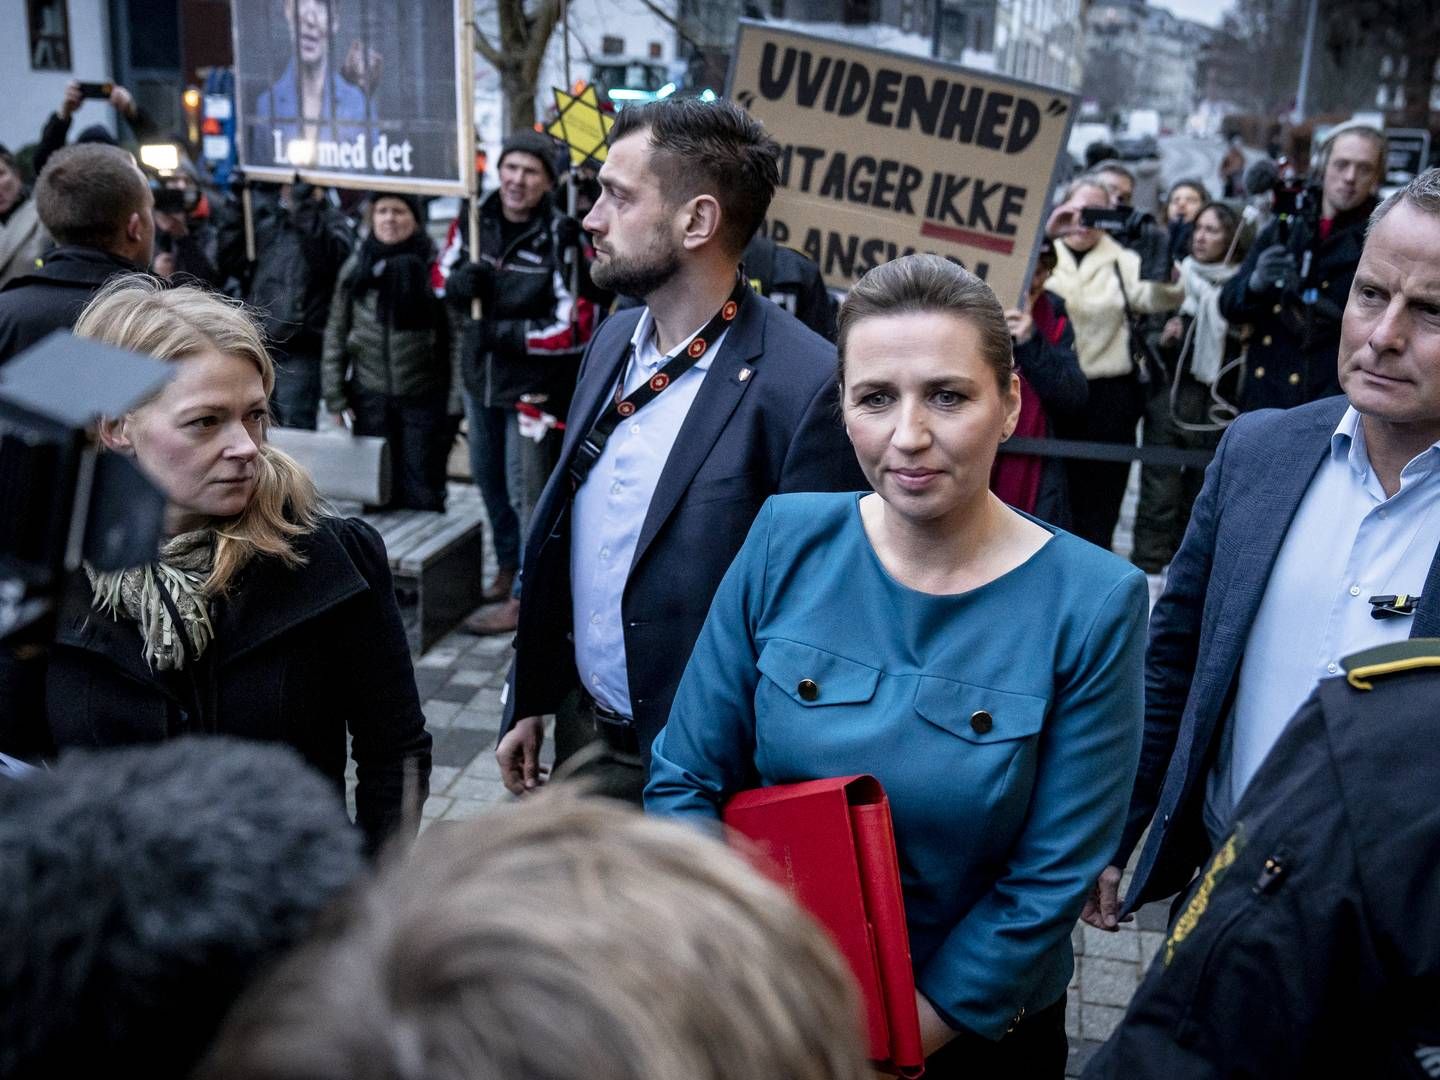 Mette Frederiksen ankom i morges til Retten på Frederiksberg, hvor hun afhøres af Minkkommissionen. | Foto: Mads Claus Rasmussen